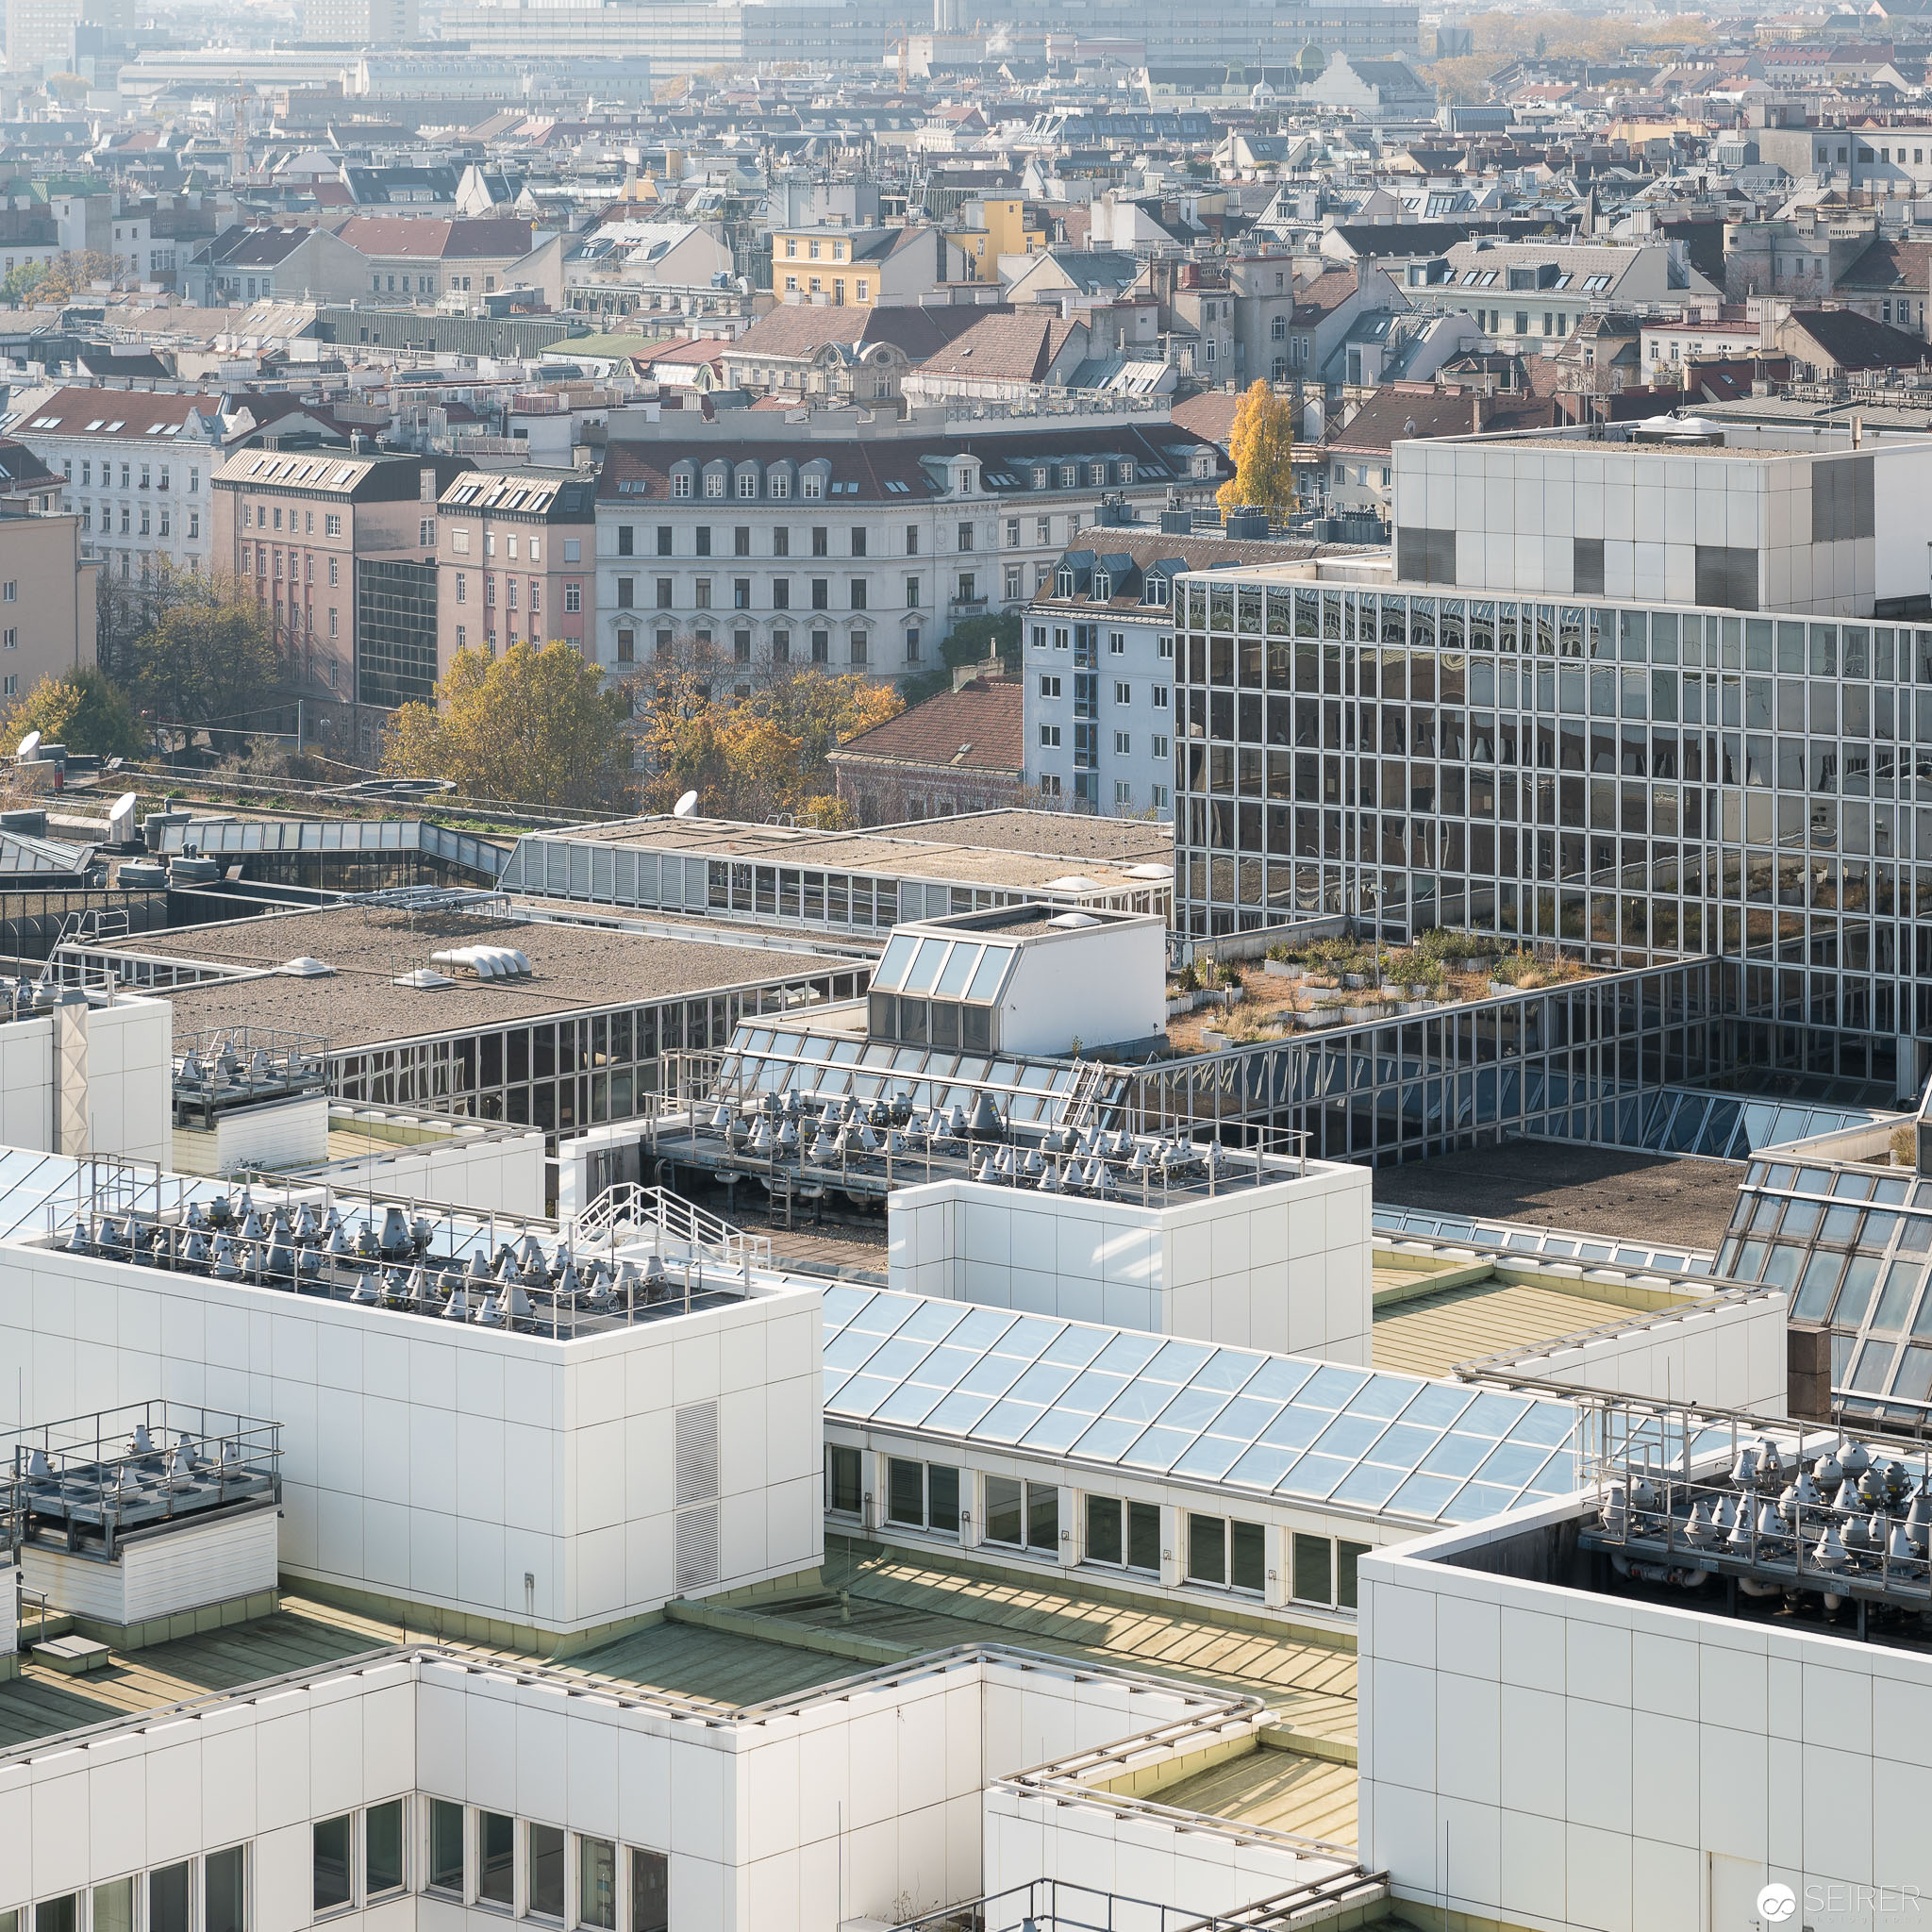 Ehemalige WU Wien - Ausblick vom 14. Stock der Müllverbrennungsanlage Spittelau